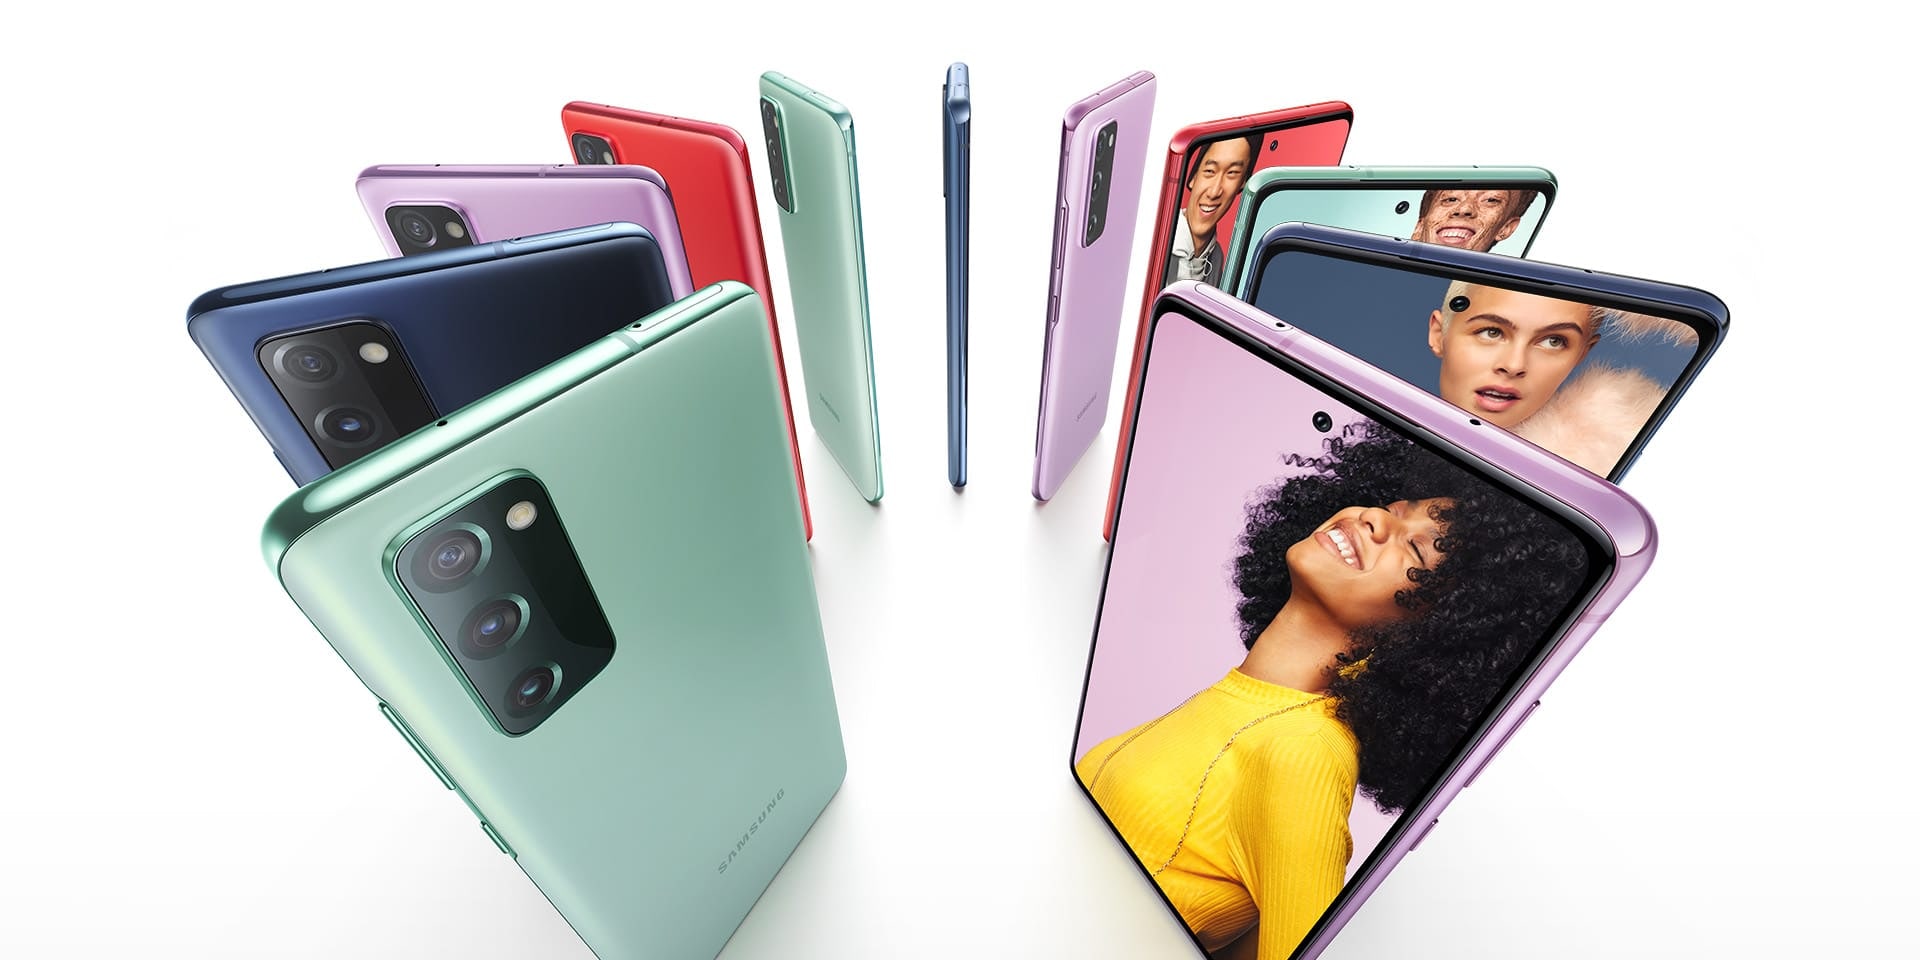 Onze téléphones Galaxy S20 FE debout en cercle : le Cloud Blue, le Cloud Red, le Cloud Lavender et le Cloud Mint. Certains sont vus de dos et d’autres de face, avec des photos de personnes à l'écran. Chaque personne se tient sur un fond coloré assorti à la couleur du téléphone.